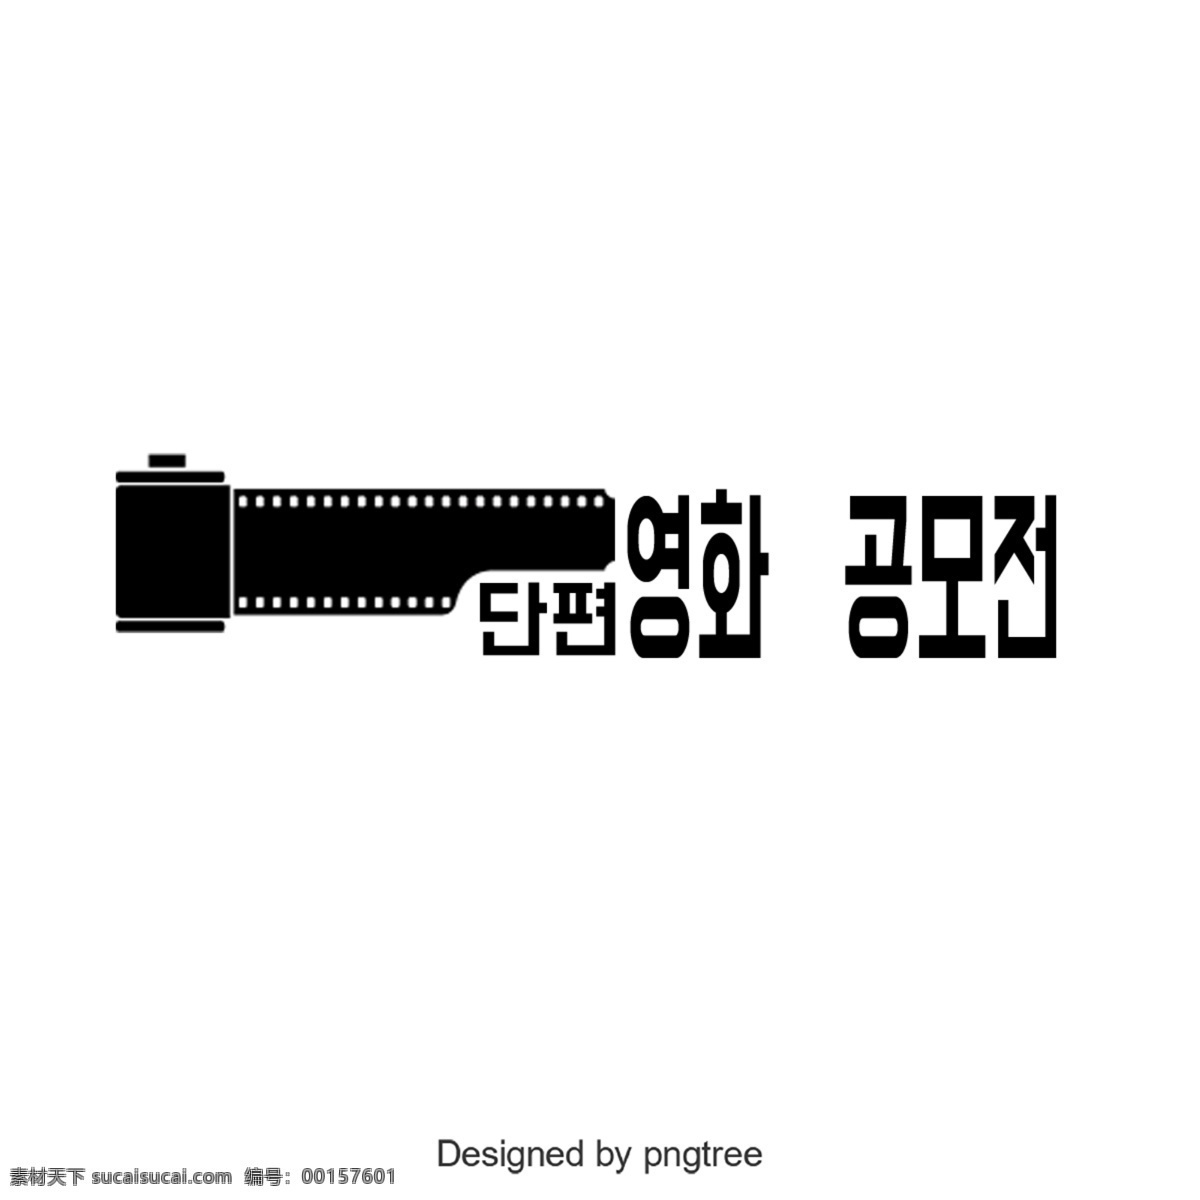 短片 大奖赛 非常 漂亮 韩国 字体 韩文 字形 立体 切片 负片 简单 黑金